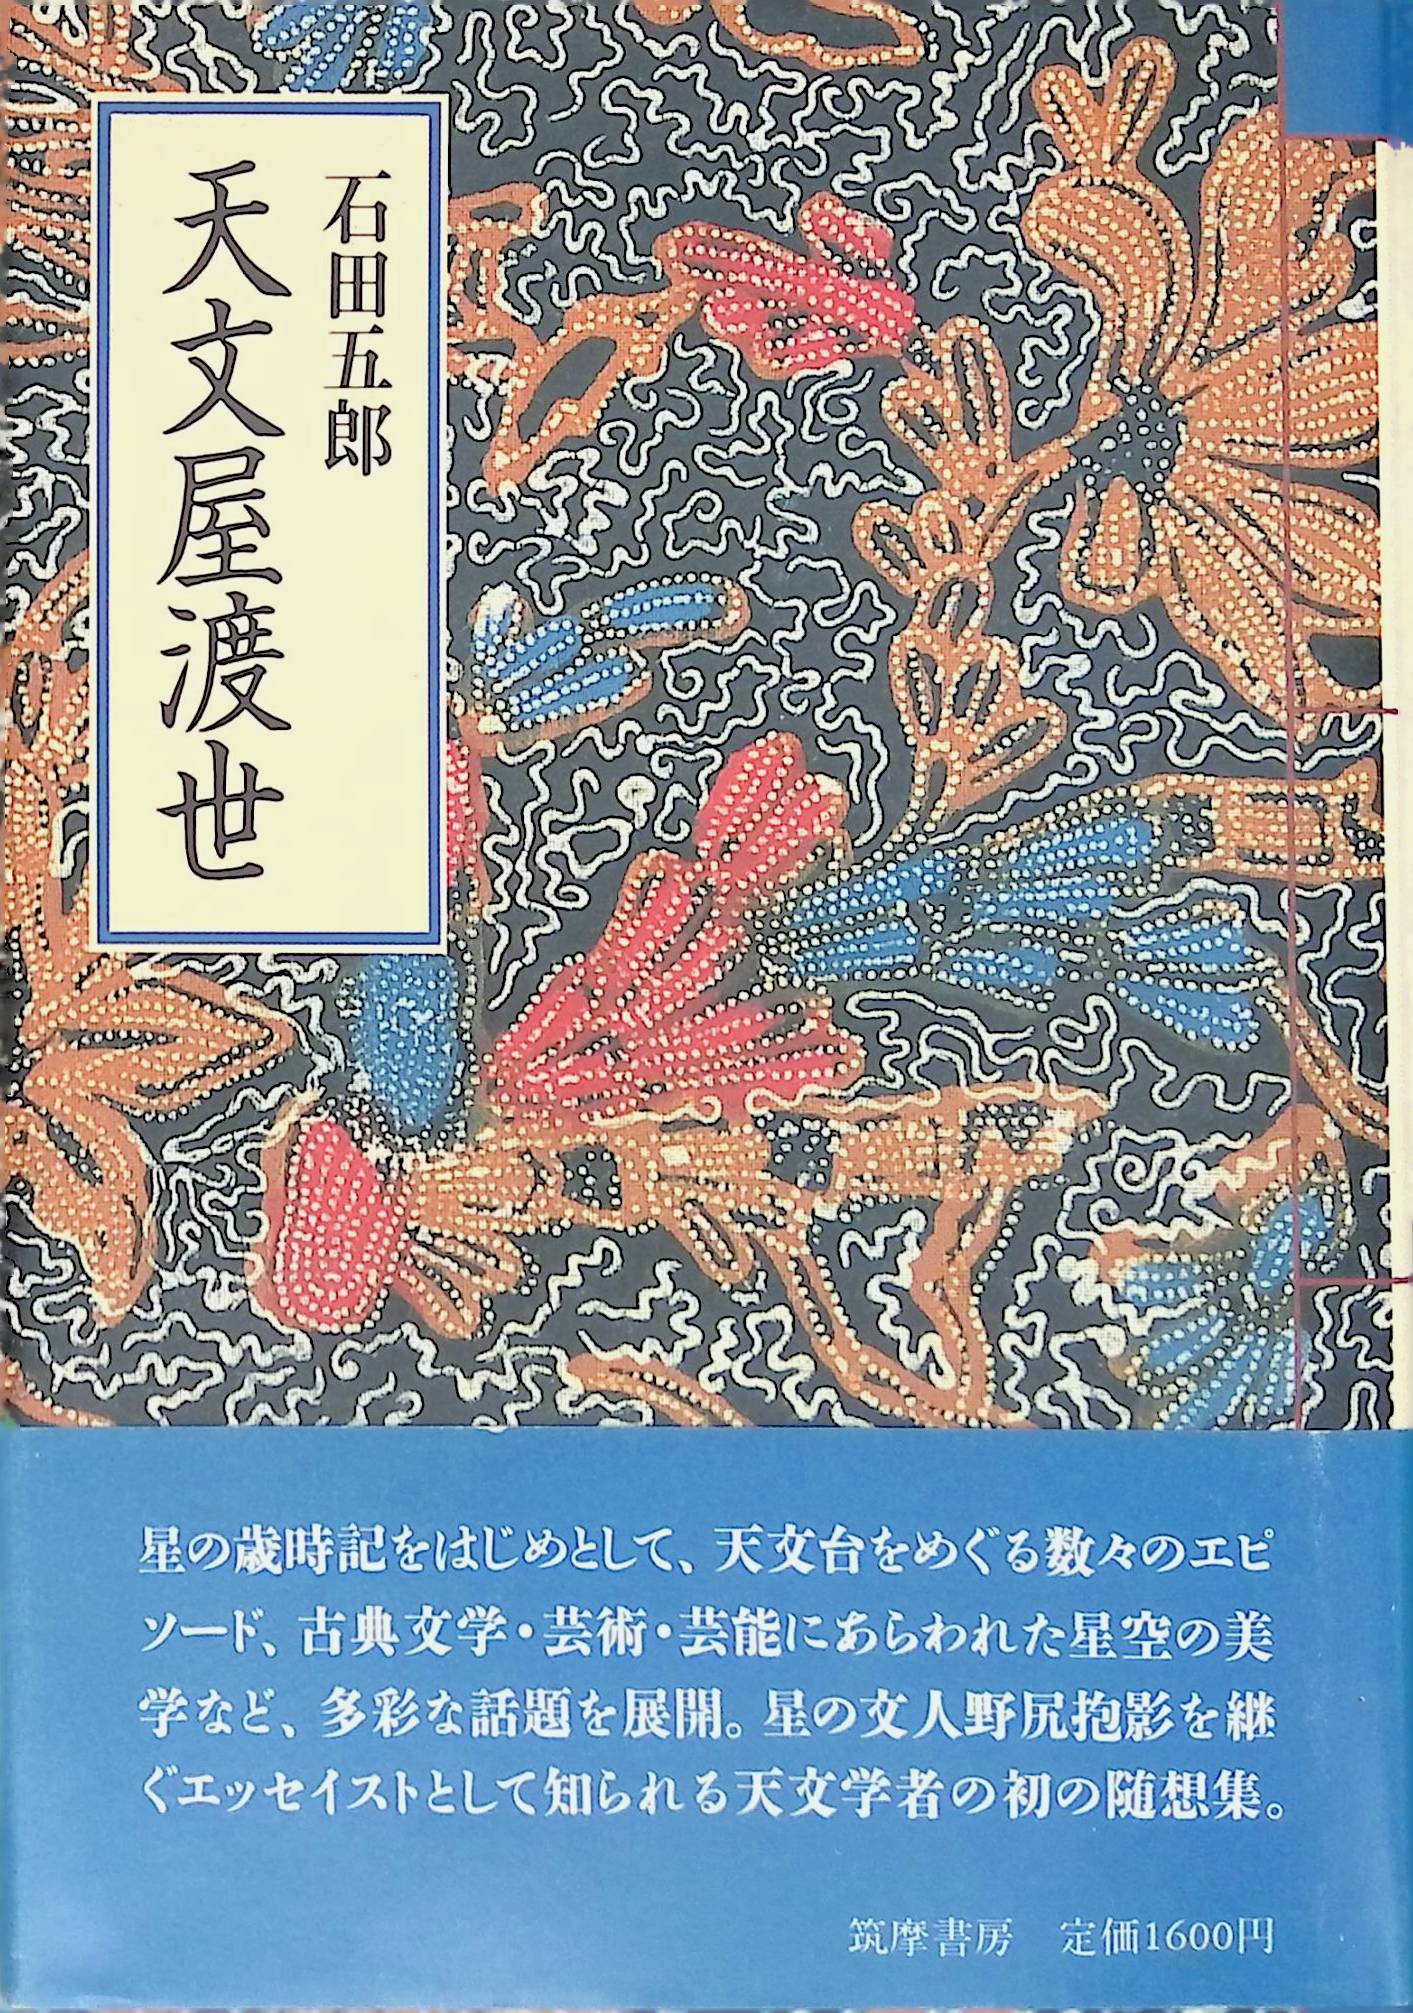 天文屋渡世 石田 五郎(ISBN:448086024X)